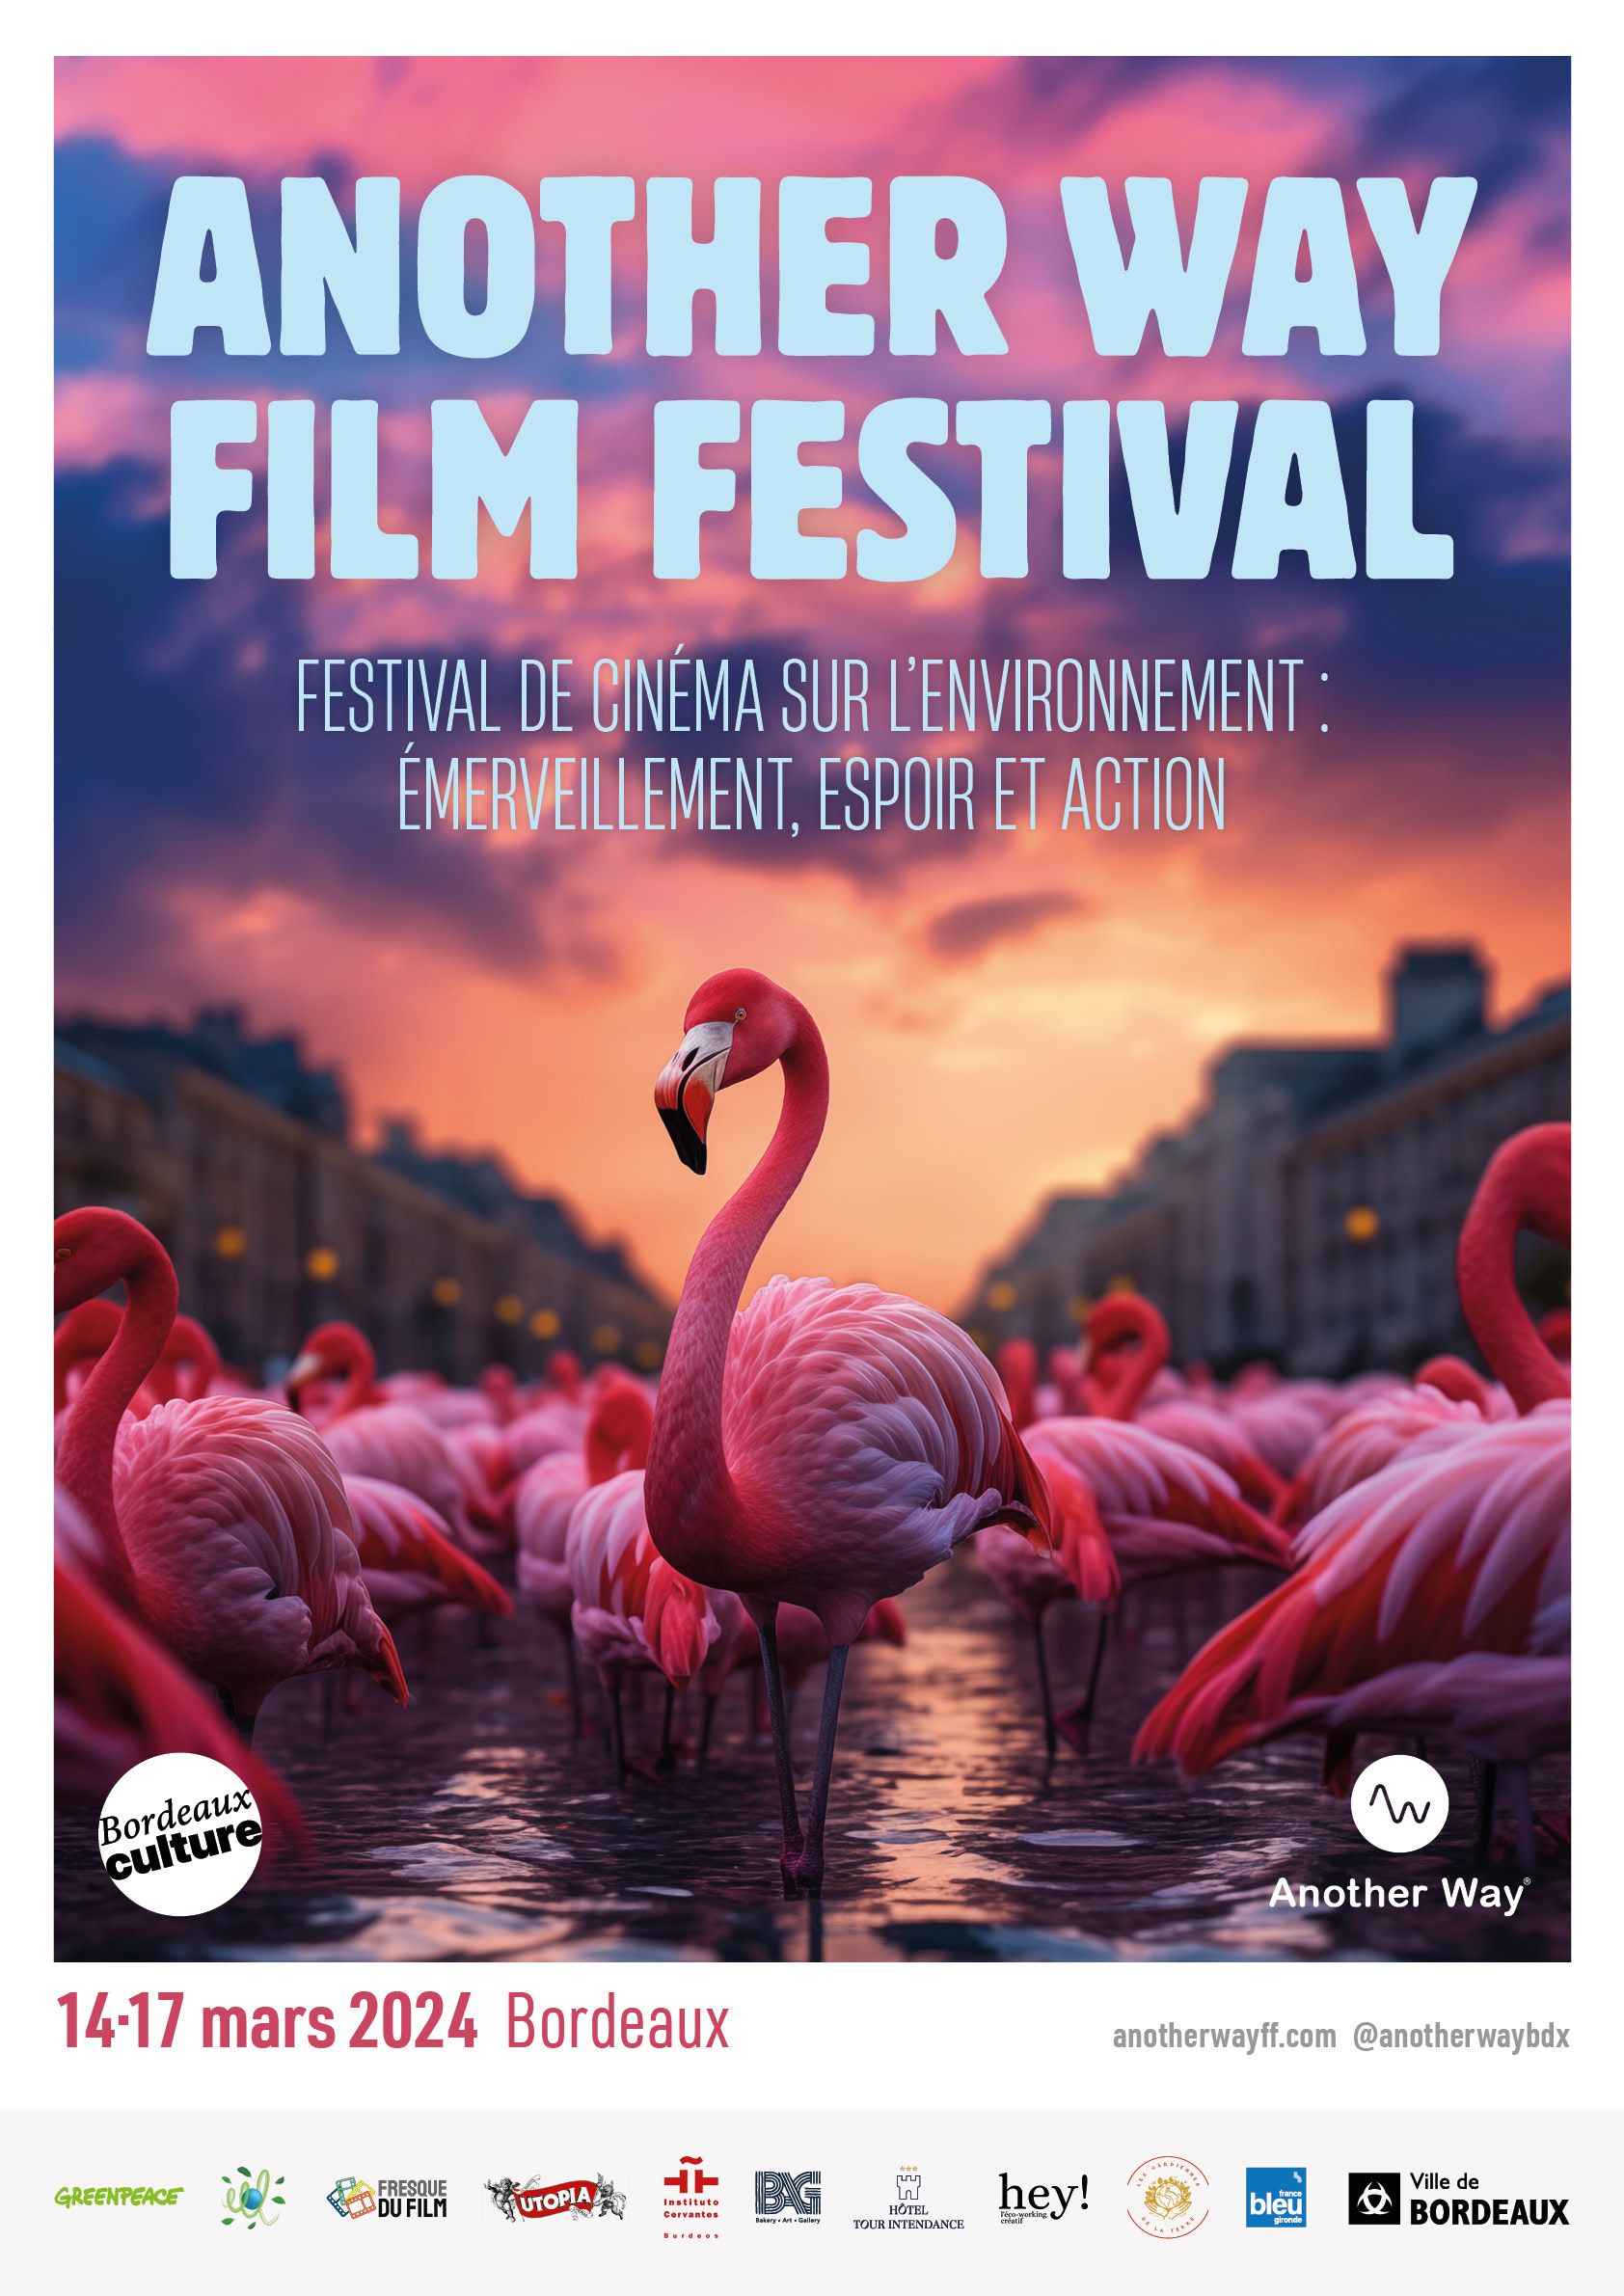 Another Way Film Festival arrive à Bordeaux